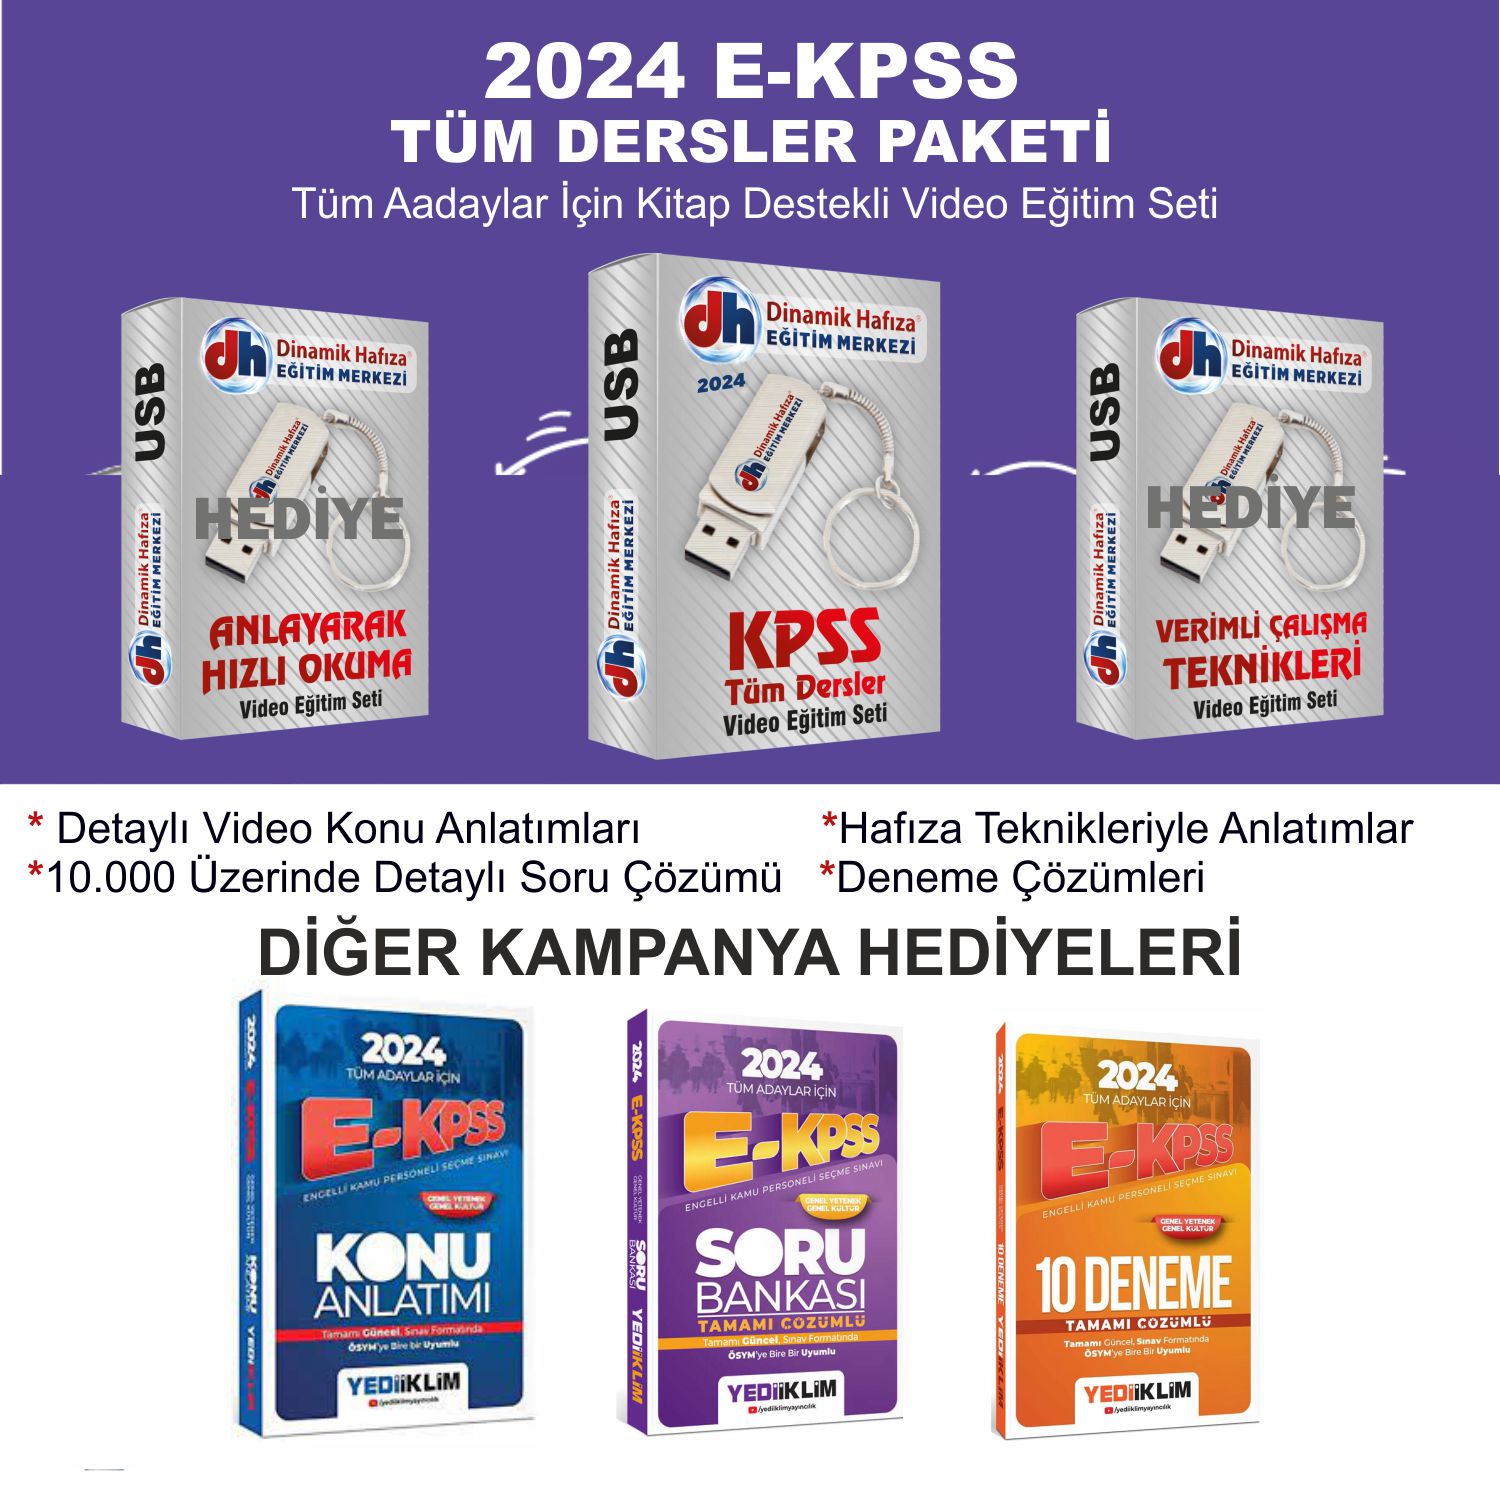 2024 E-KPSS Mega  Paket - 